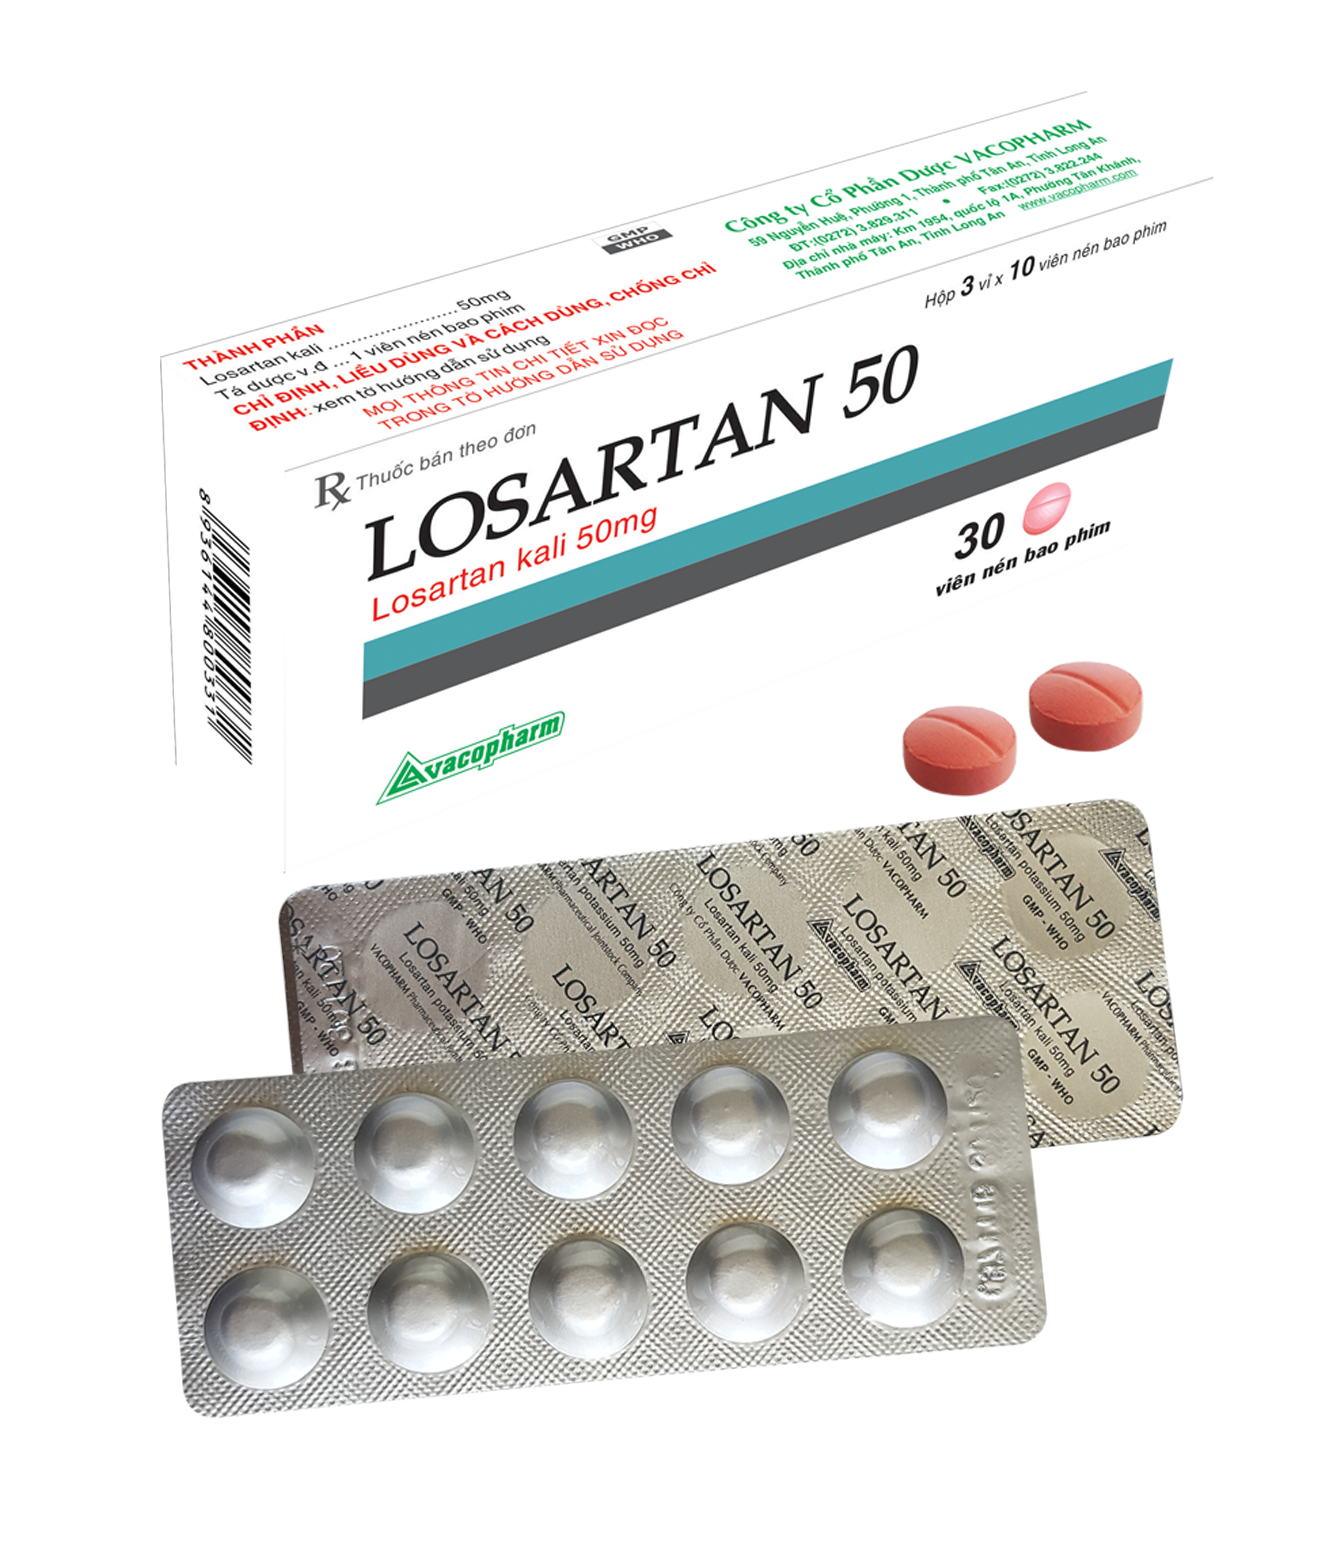 Losartan có tác dụng giảm huyết áp như thế nào?
